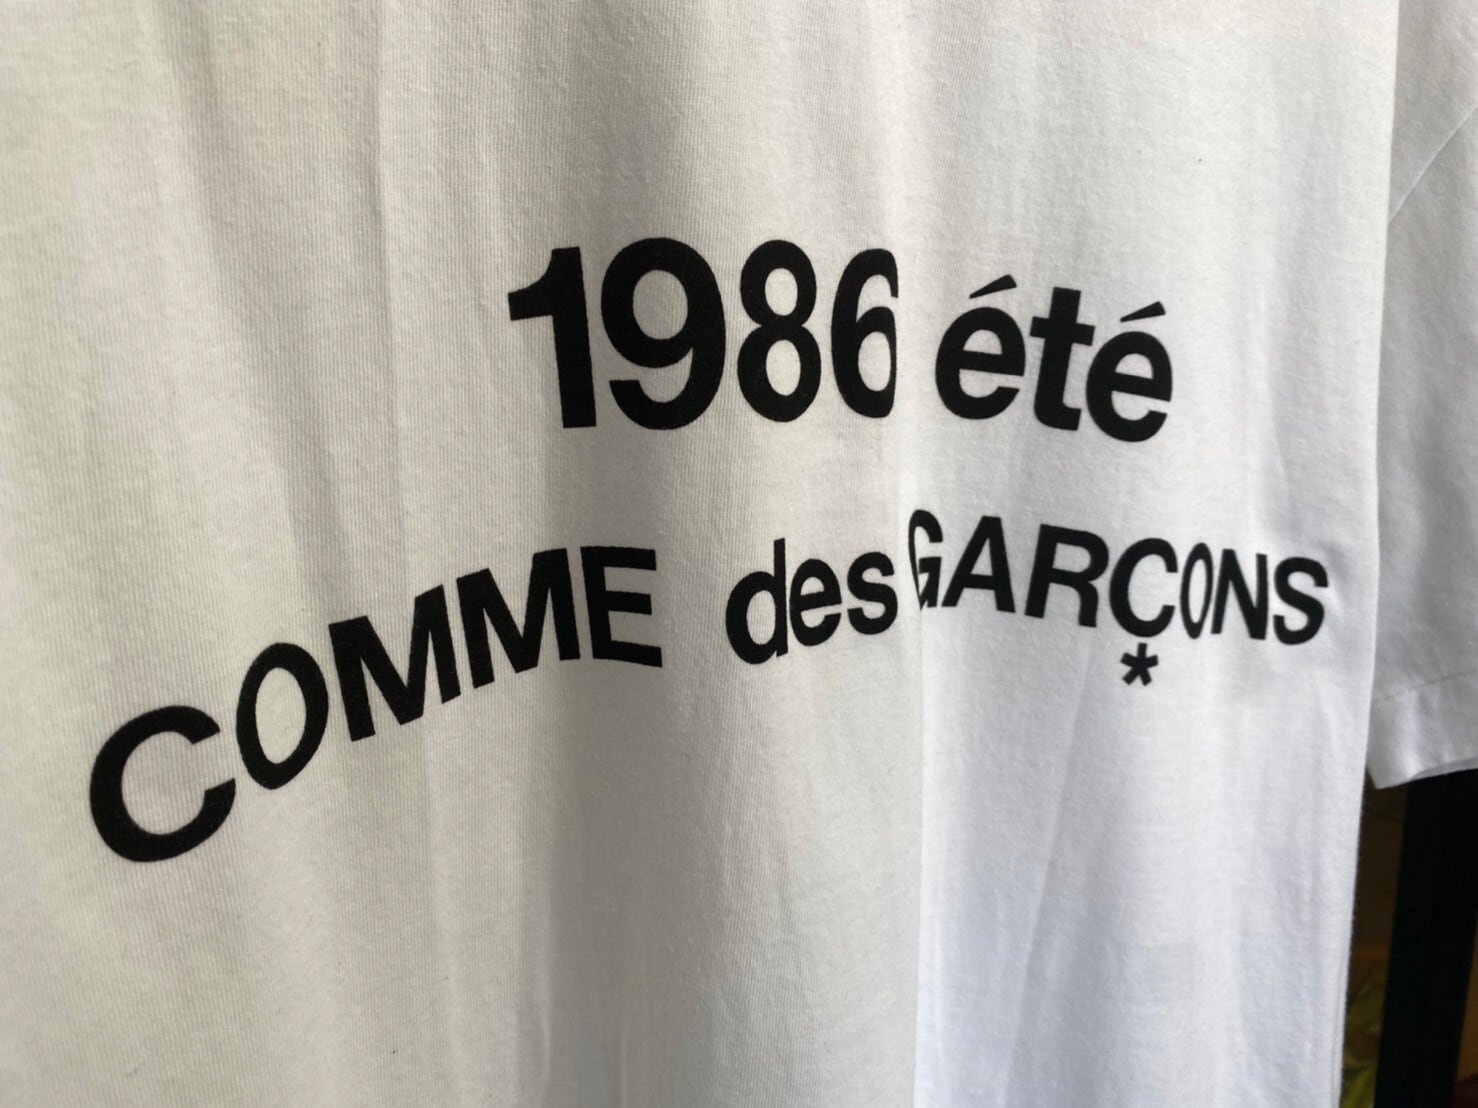 限定1986 コムデギャルソン T-shirt white